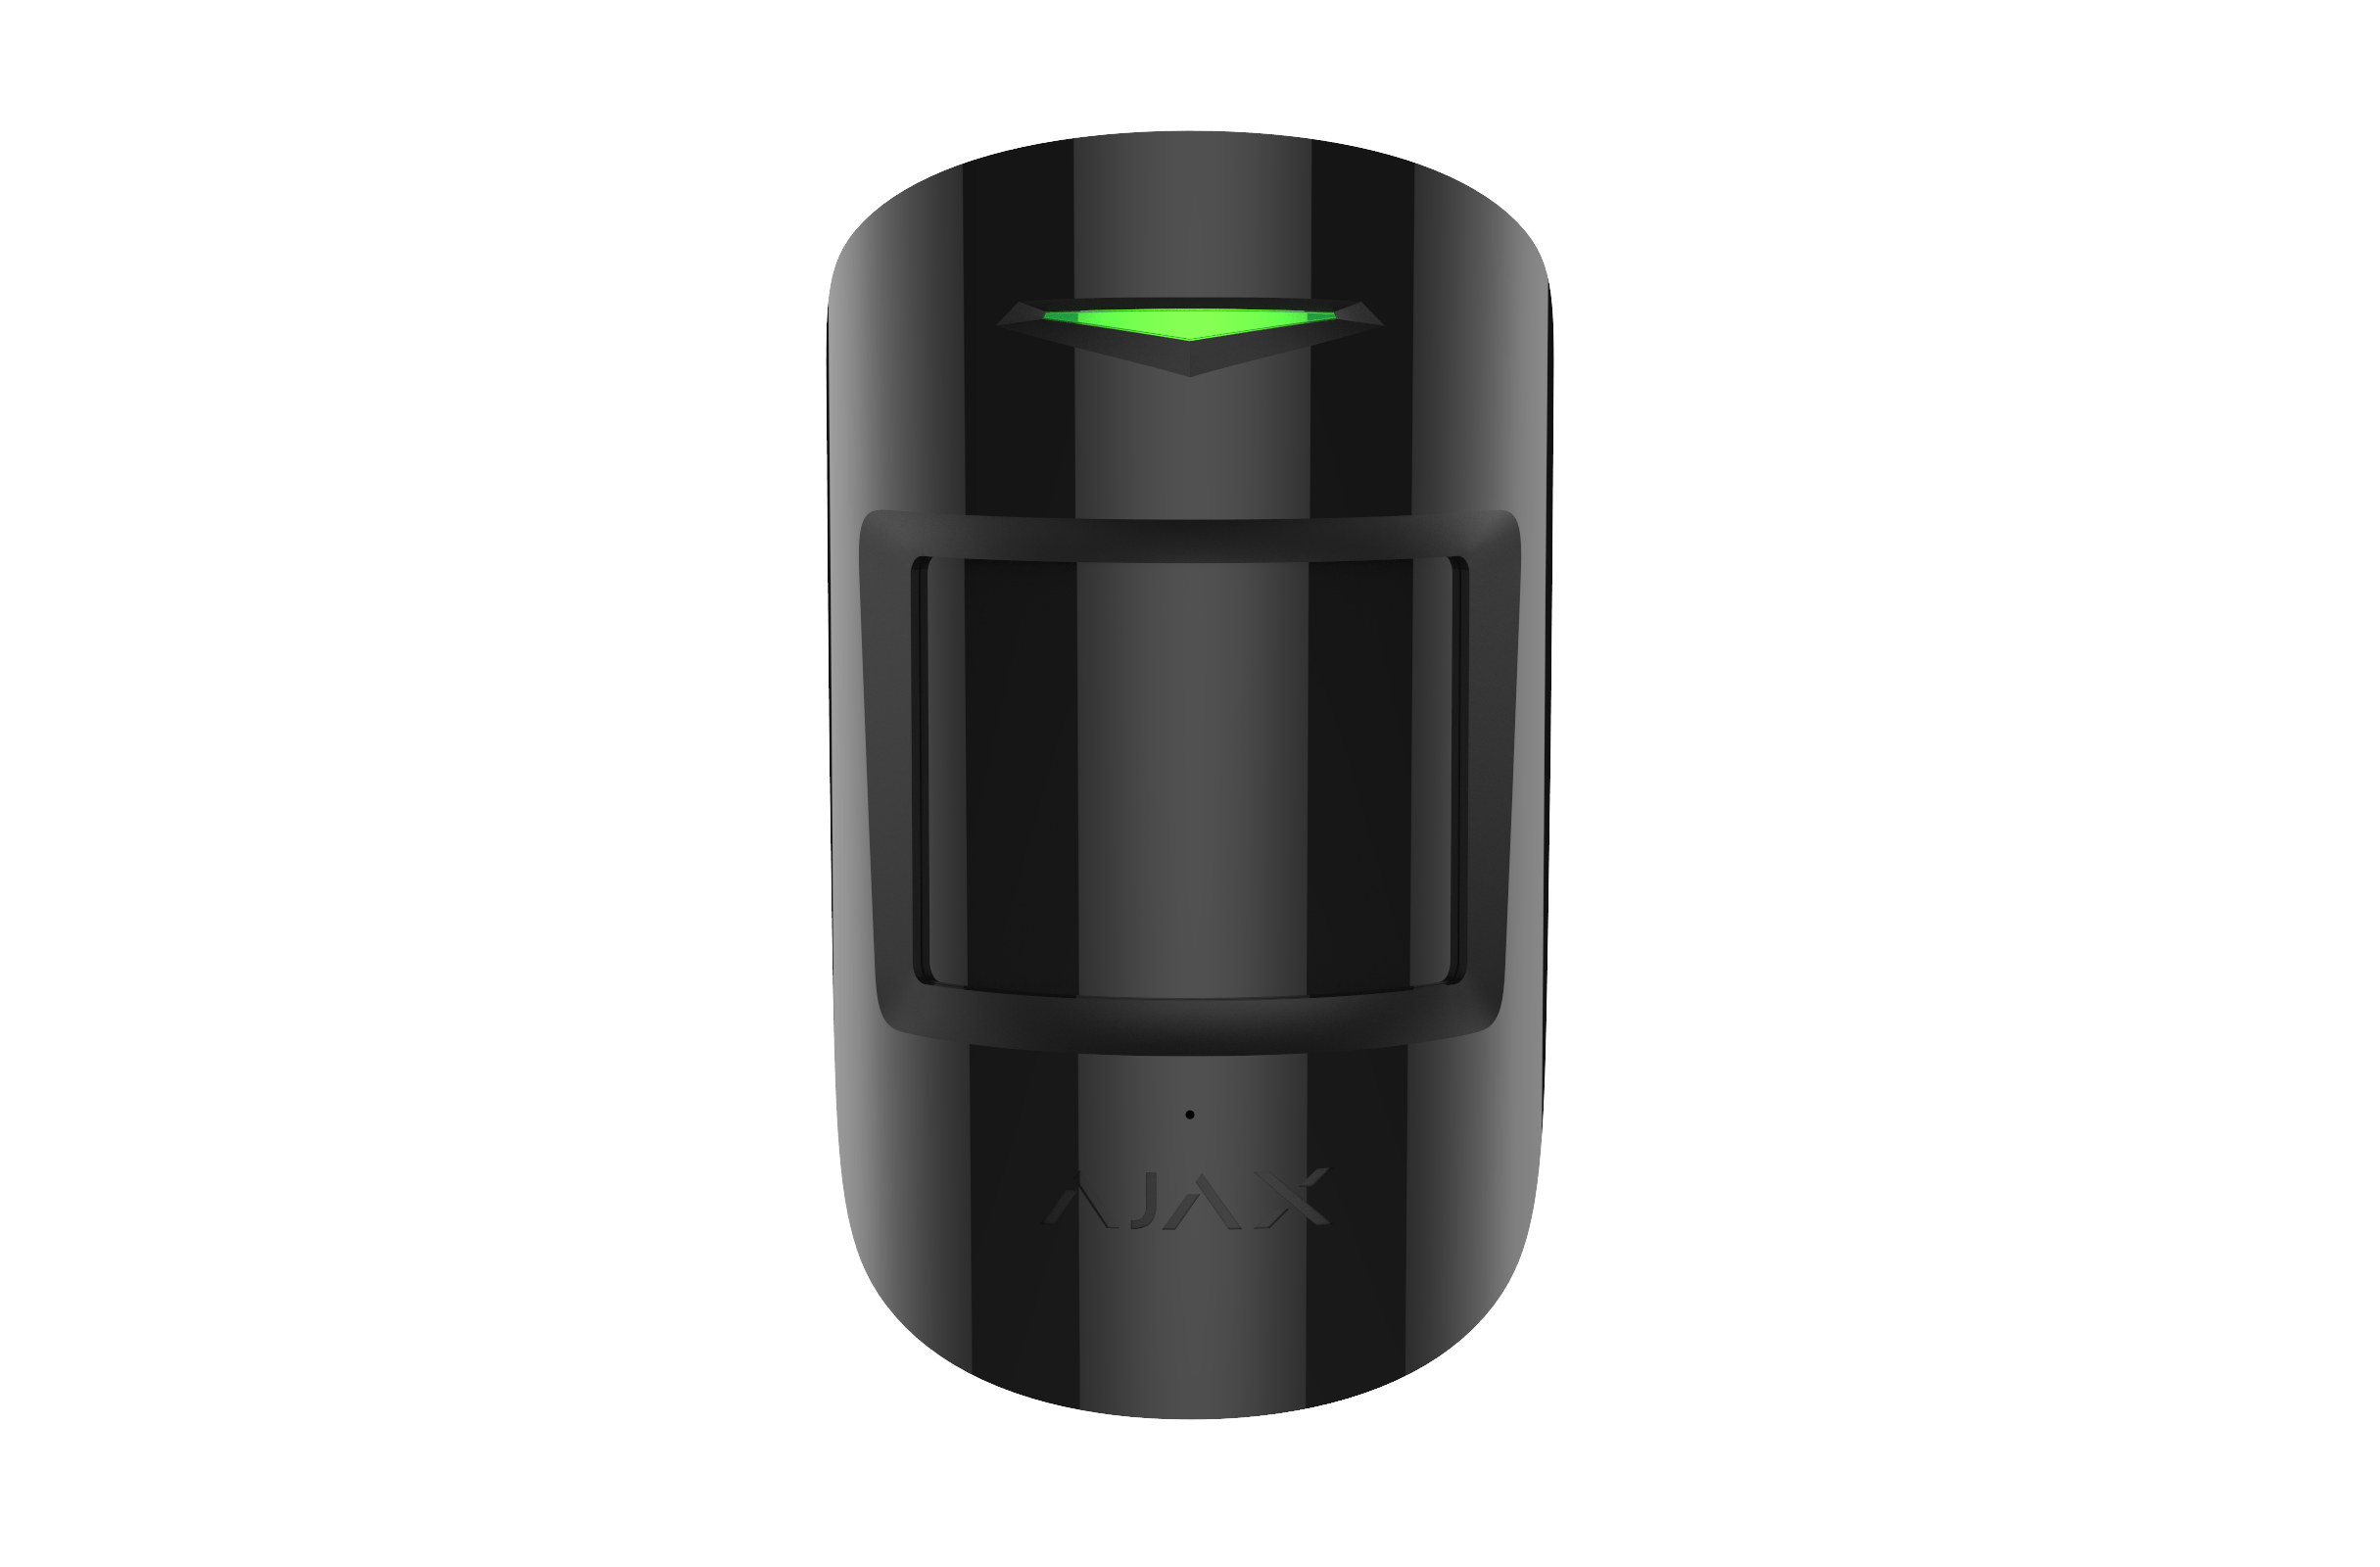 Ajax CombiProtect détecteur combiné sans fil pour alarme Ajax Détecteur AjaxSystems Noir 